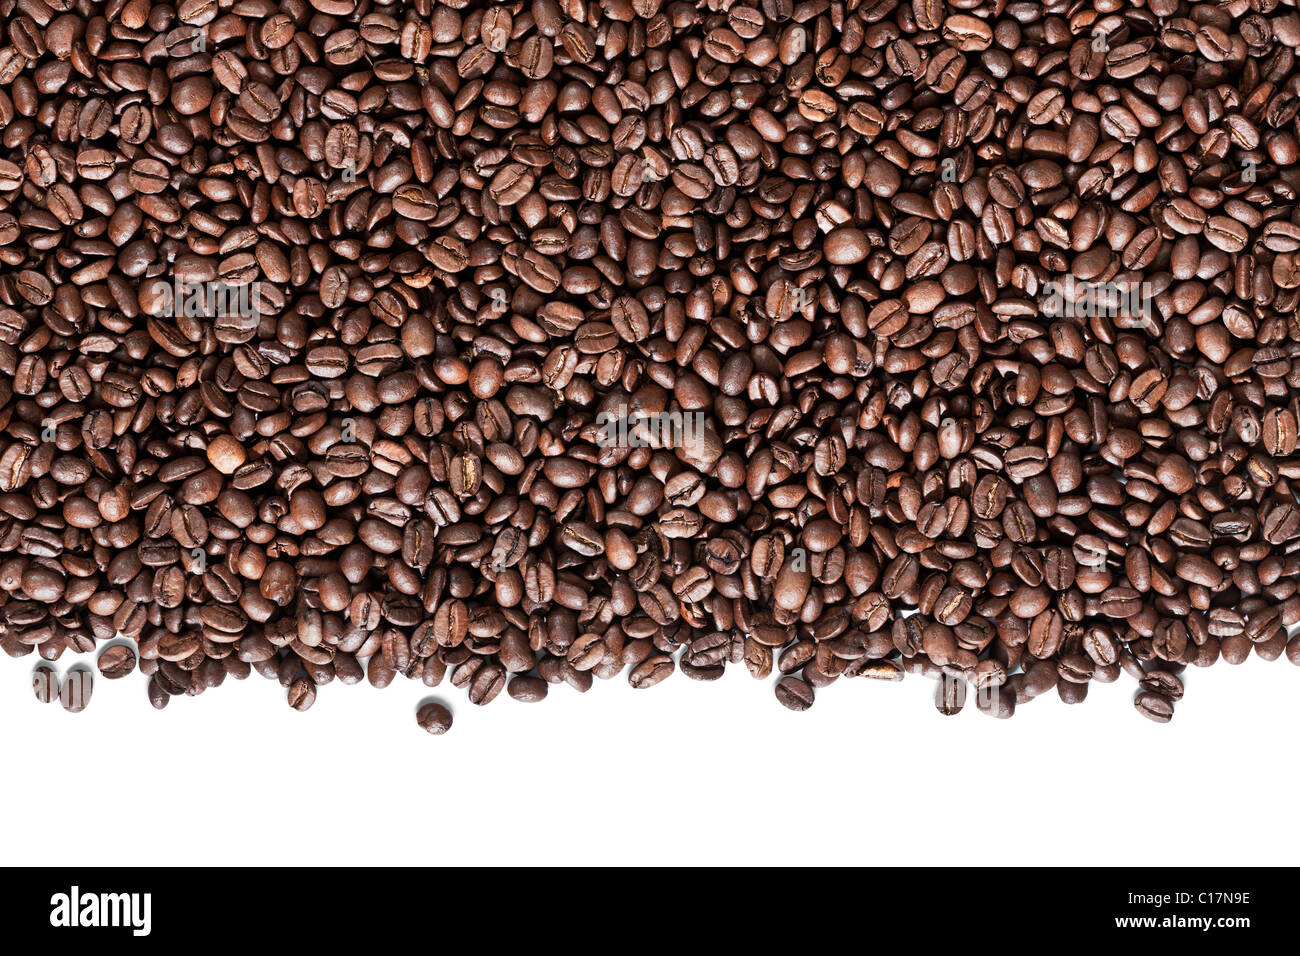 Les grains de café torréfié frais prêt pour le moulin isolé sur fond blanc Banque D'Images